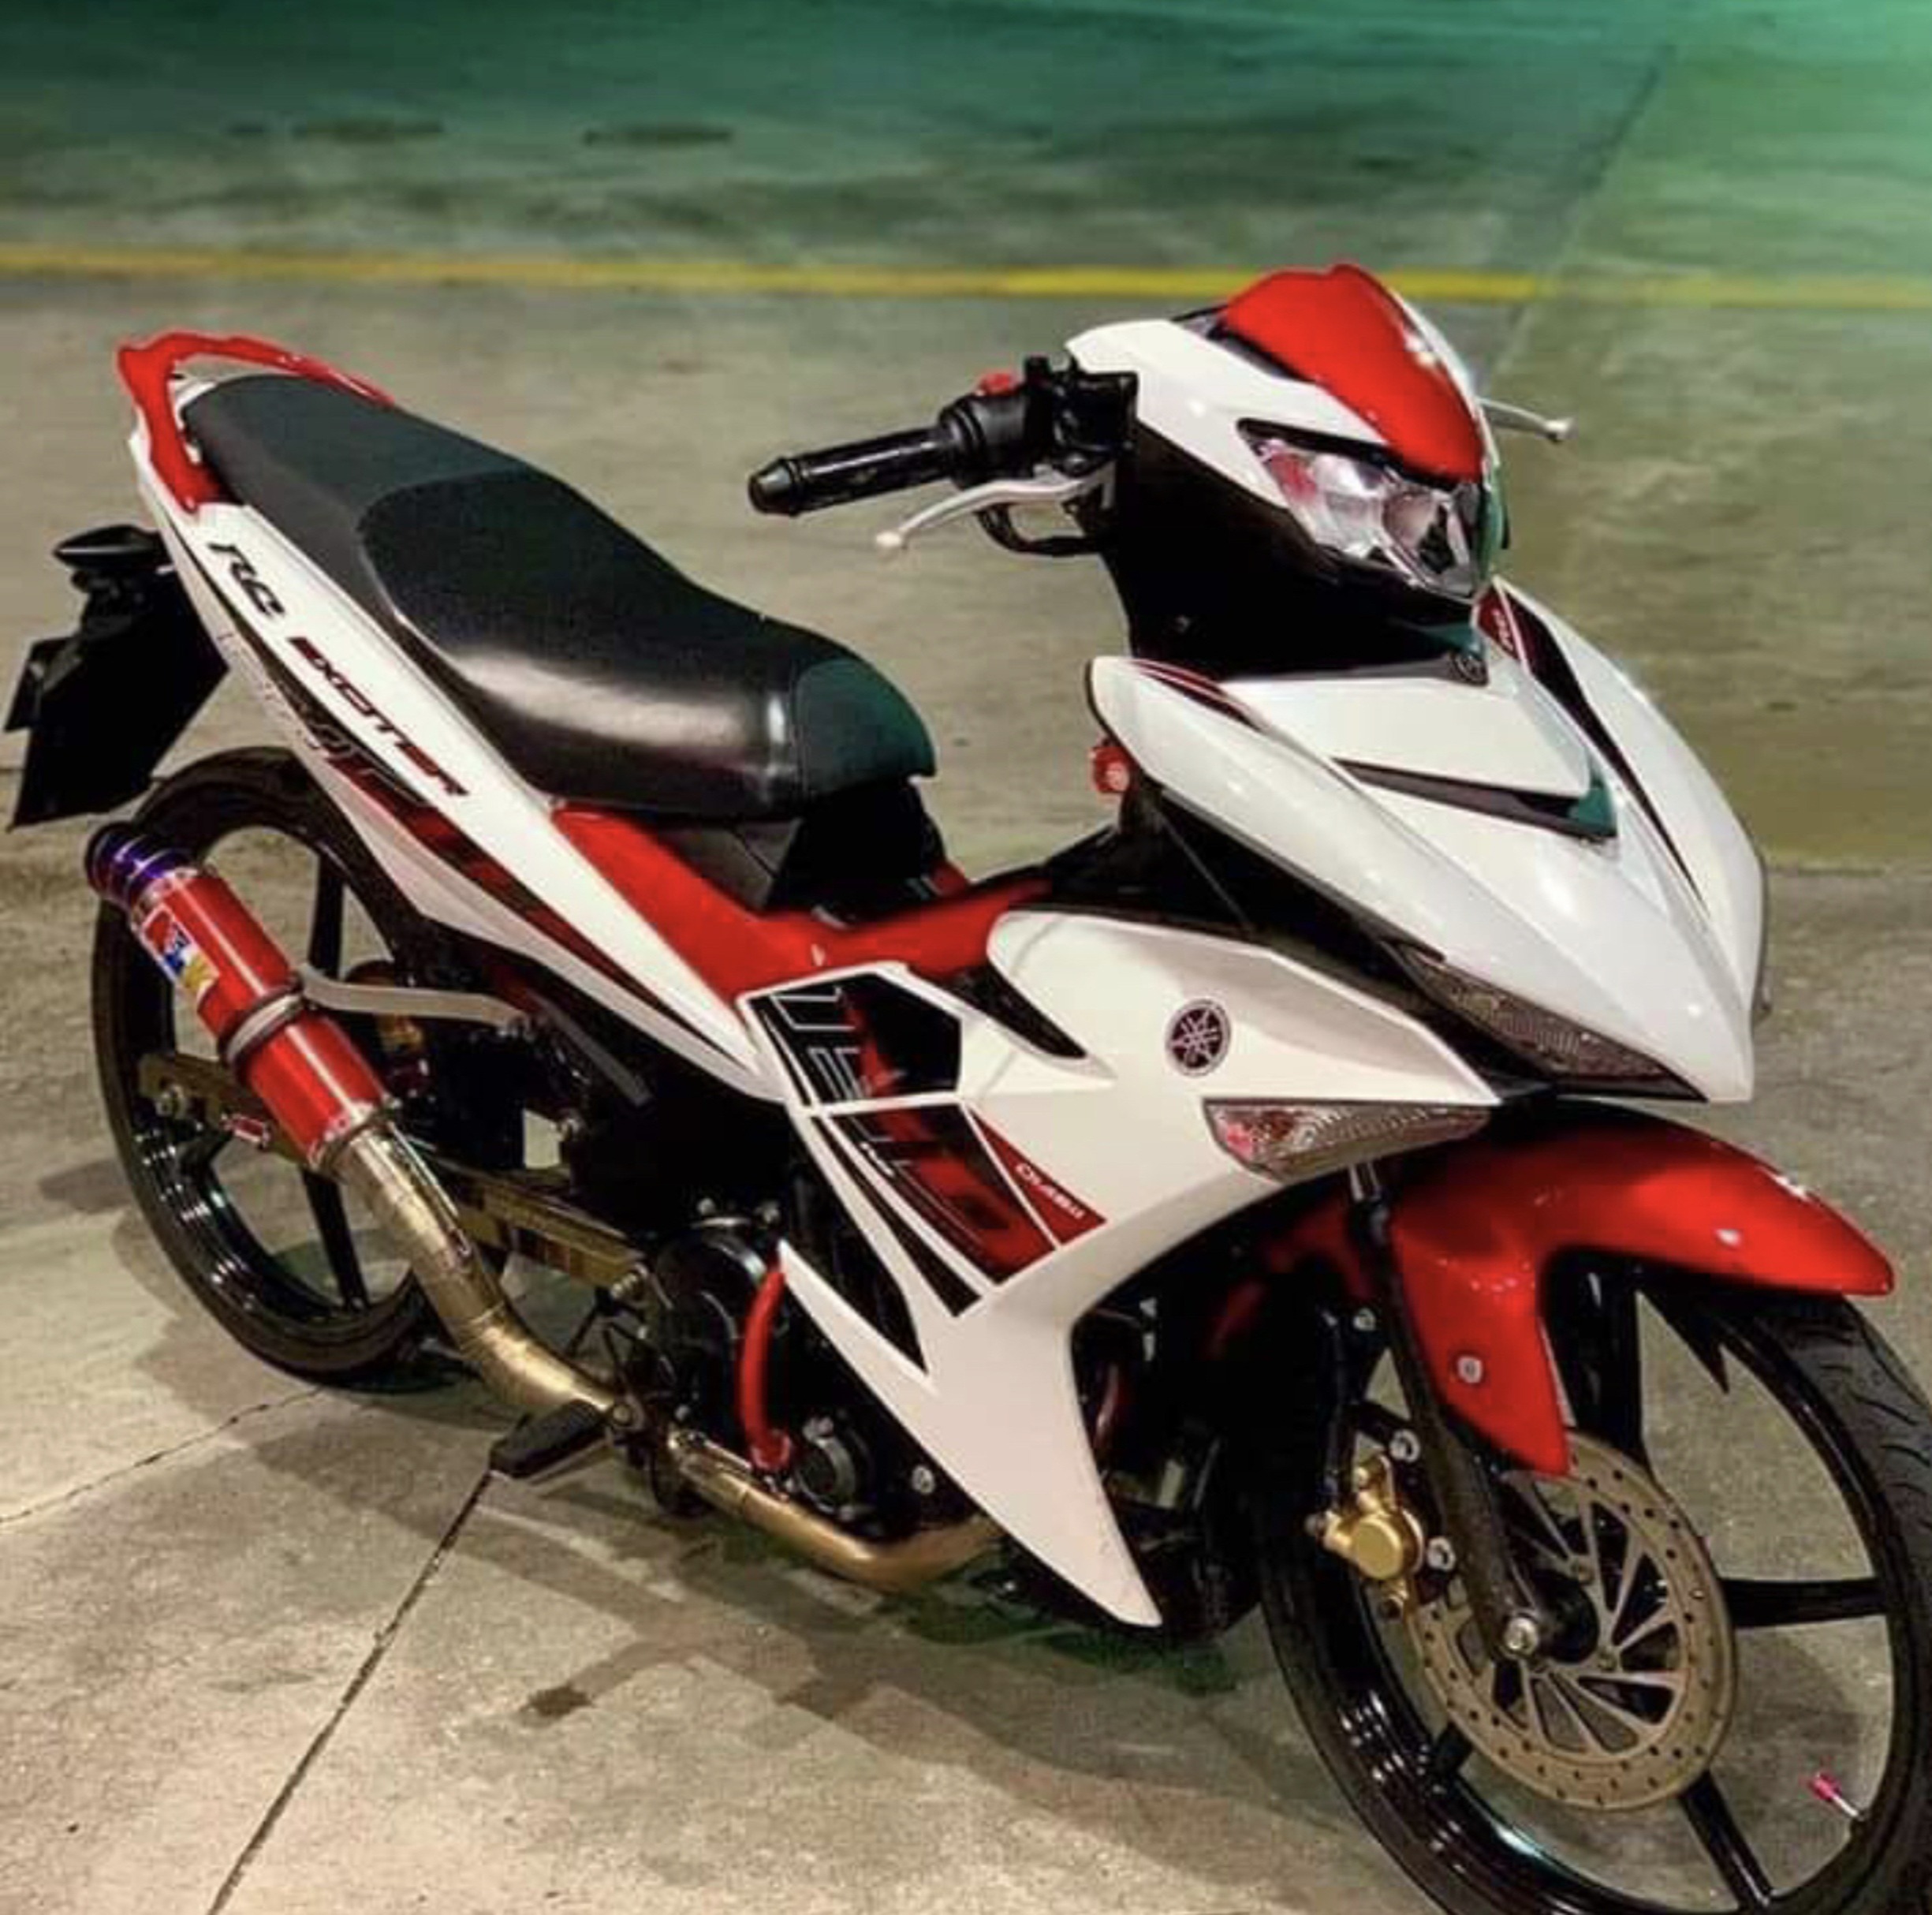 Yamaha Exciter 2020 150cc  Trắng đỏ phiên bản RC  Giá đầu năm mới   YouTube